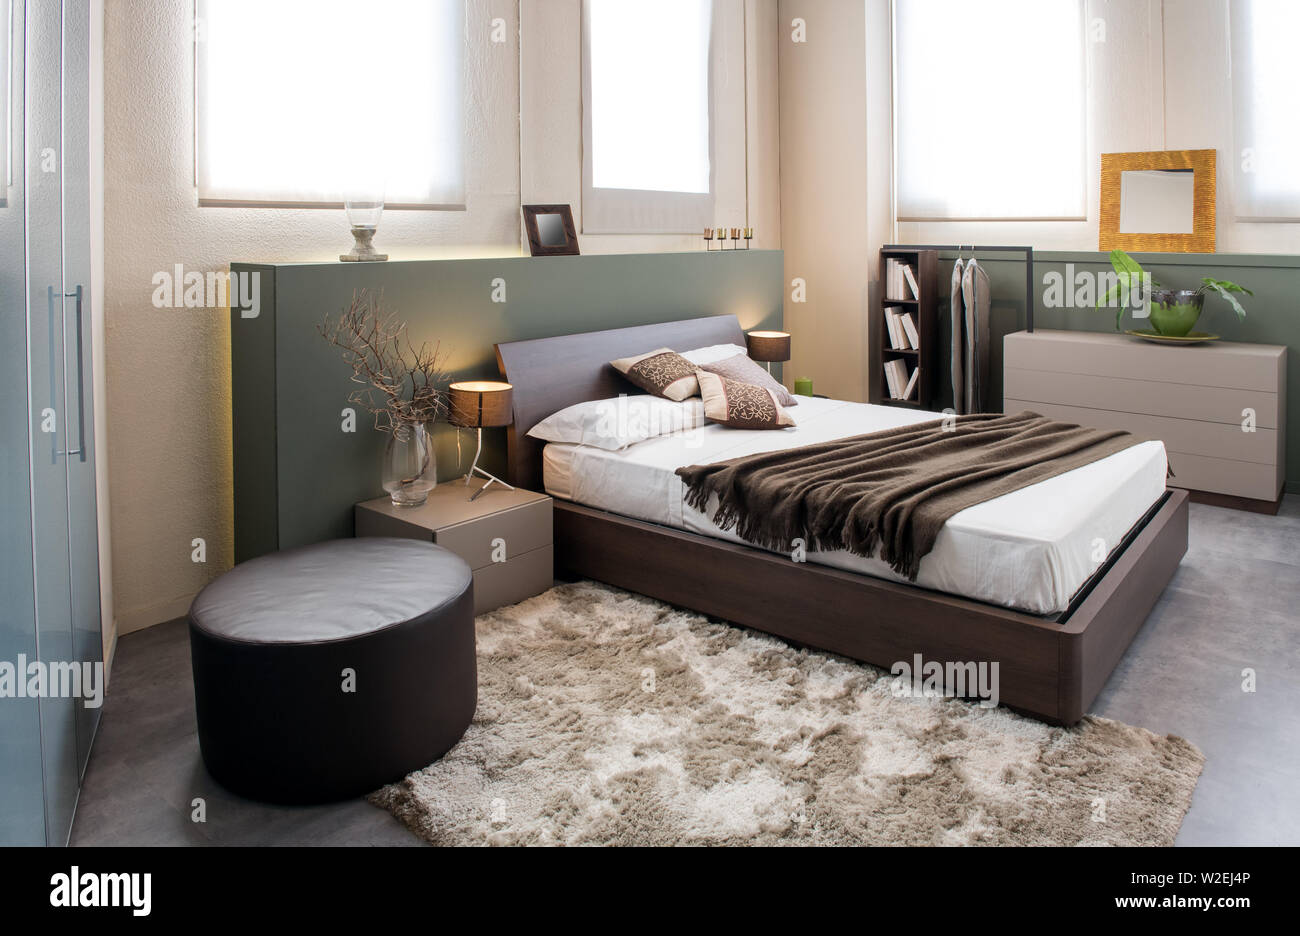 El lujo moderno brown monocromo interior del dormitorio con cabecero grande encima de una cama doble con armarios, armario empotrado y otomano Foto de stock